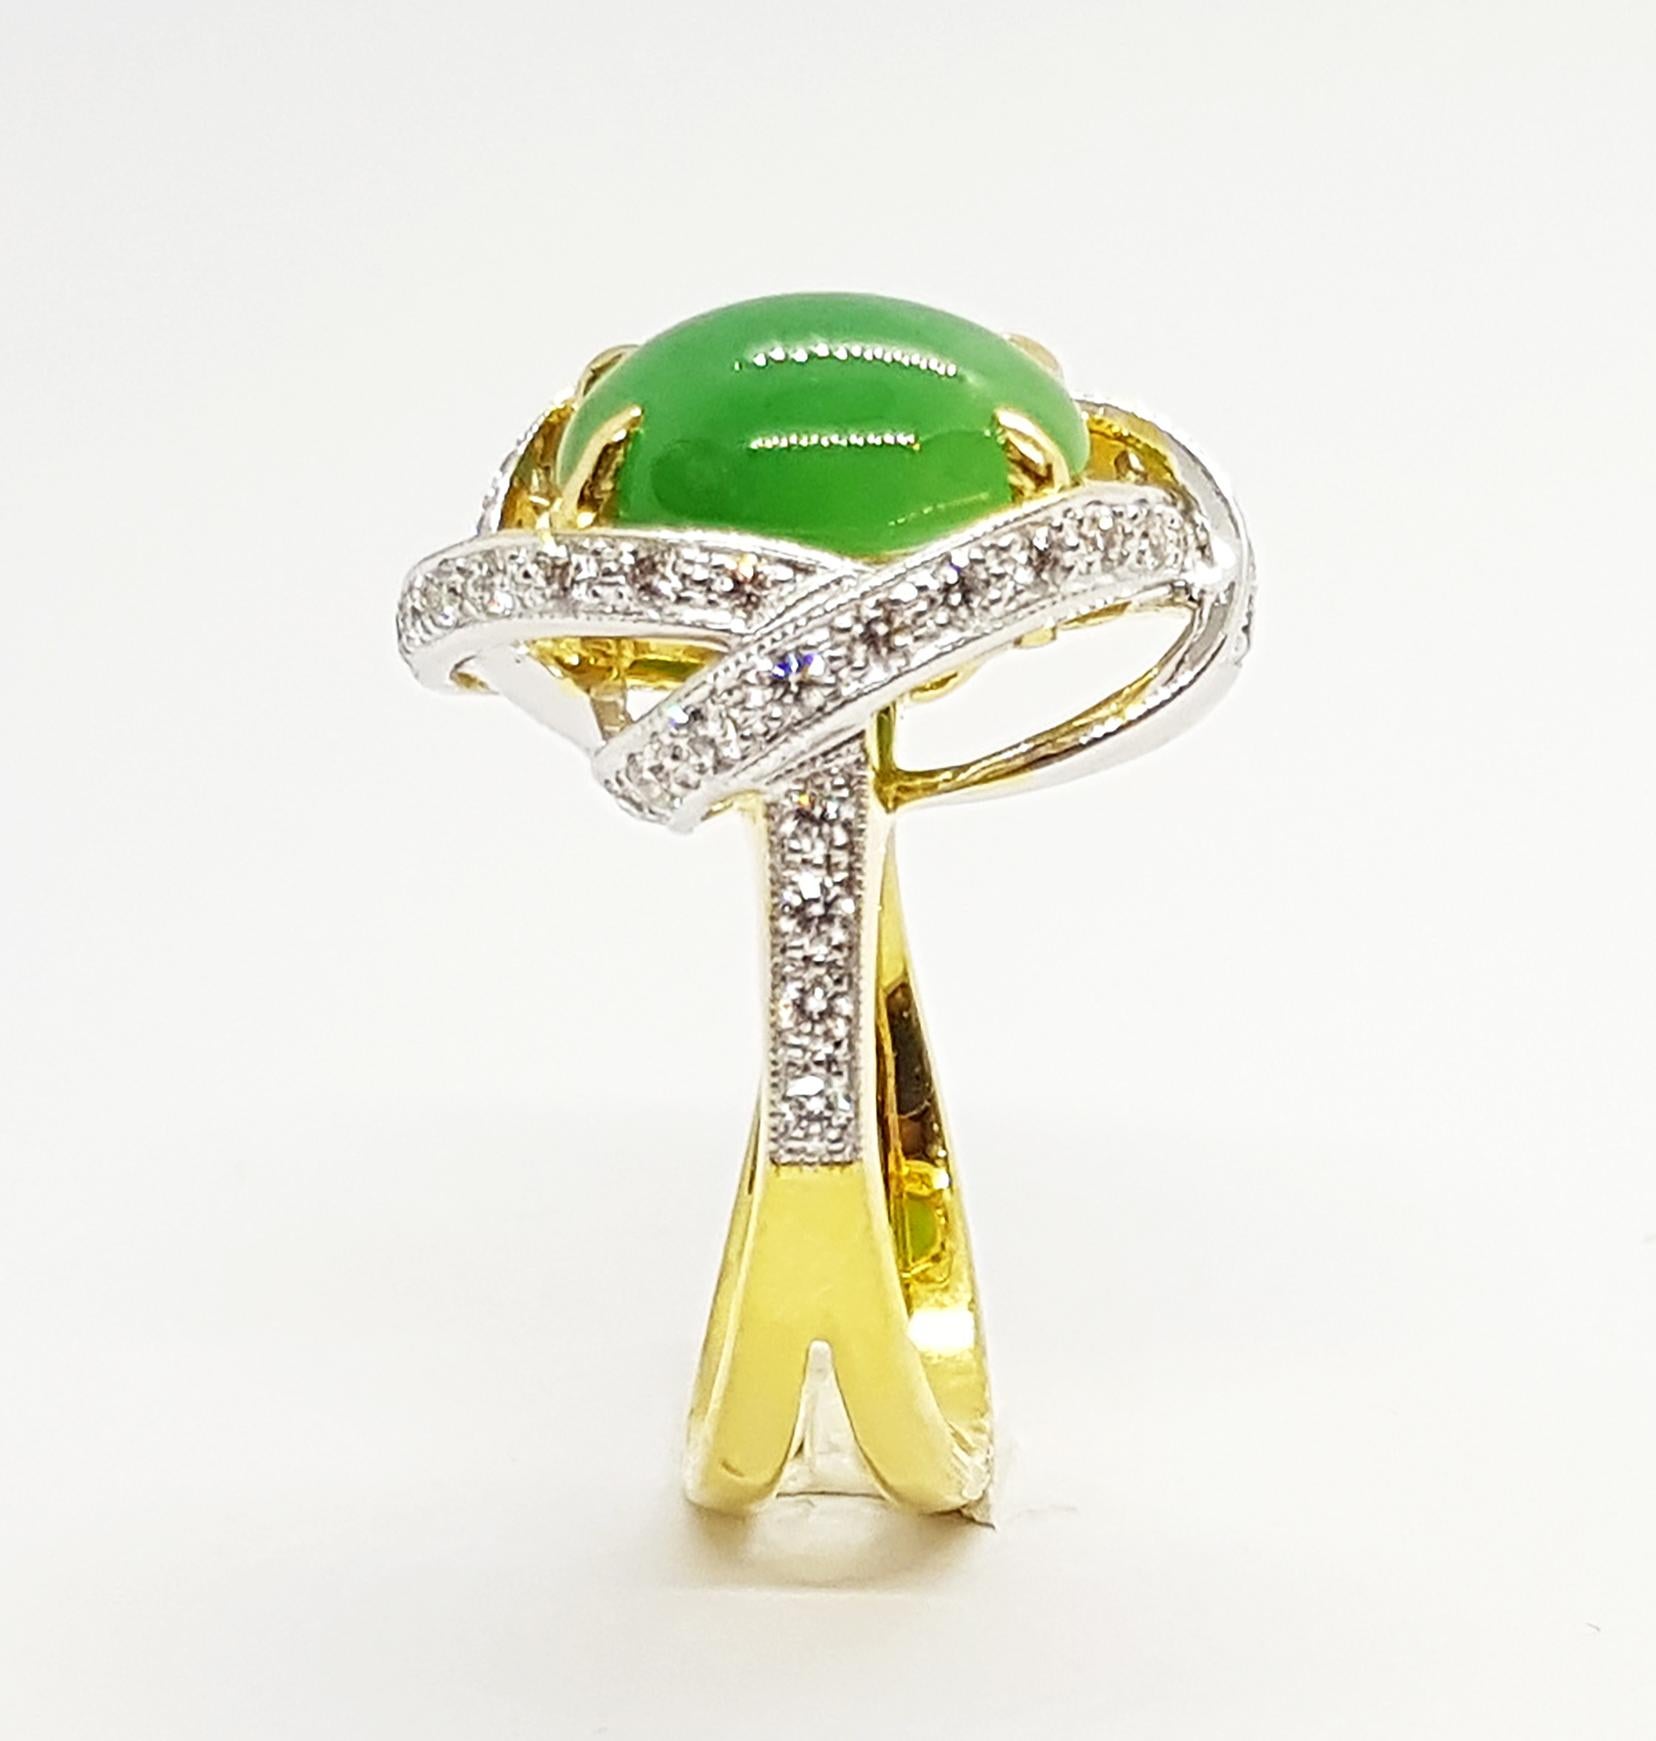 Bague en jade avec diamant de 0,48 carat sertie d'or 18 carats

Largeur :  1.4 cm 
Longueur : 1,8 cm
Taille de l'anneau : 50
Poids total : 7,82 grammes

